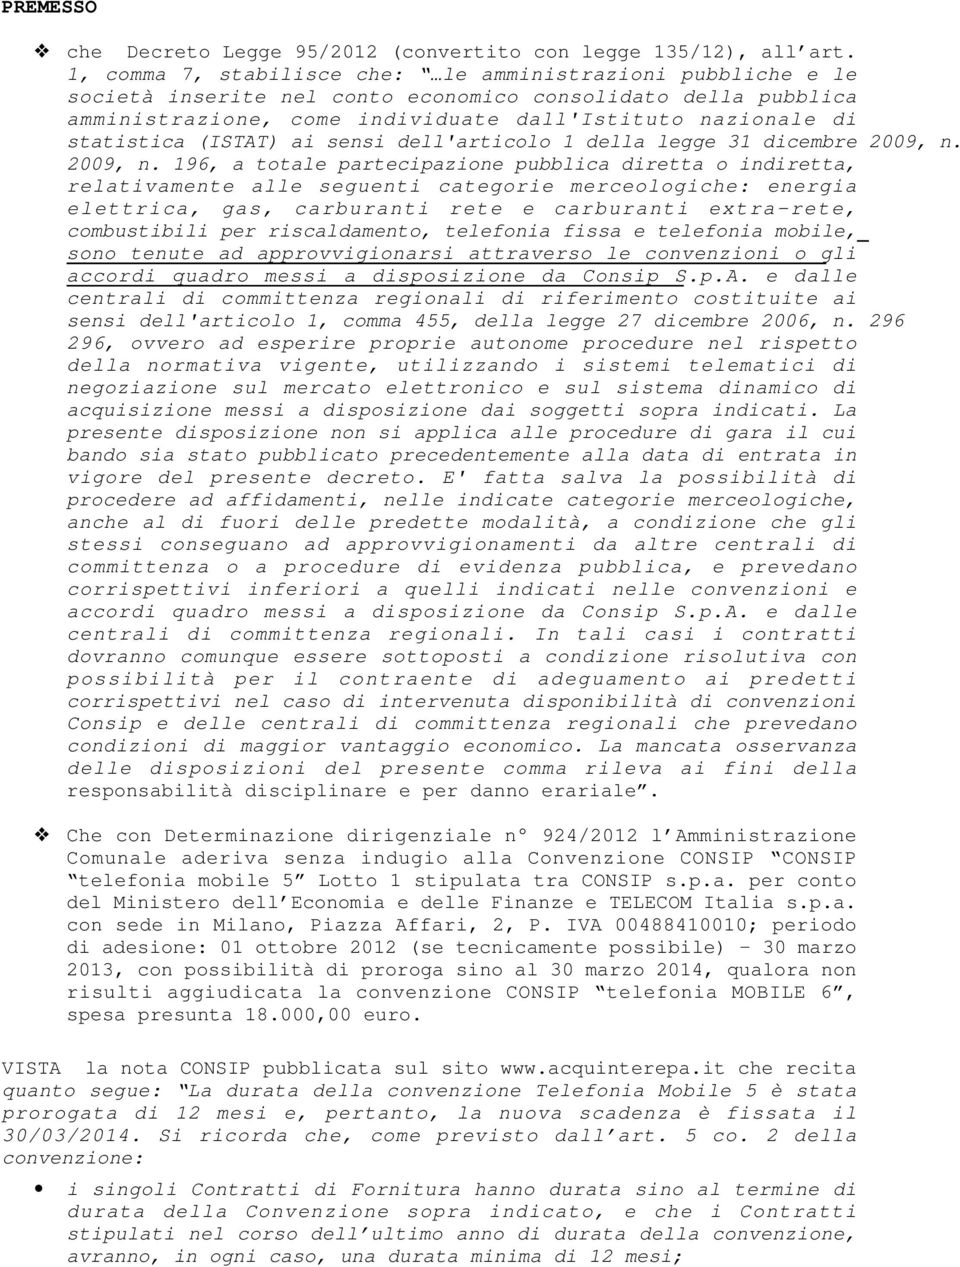 (ISTAT) ai sensi dell'articolo 1 della legge 31 dicembre 2009, n.